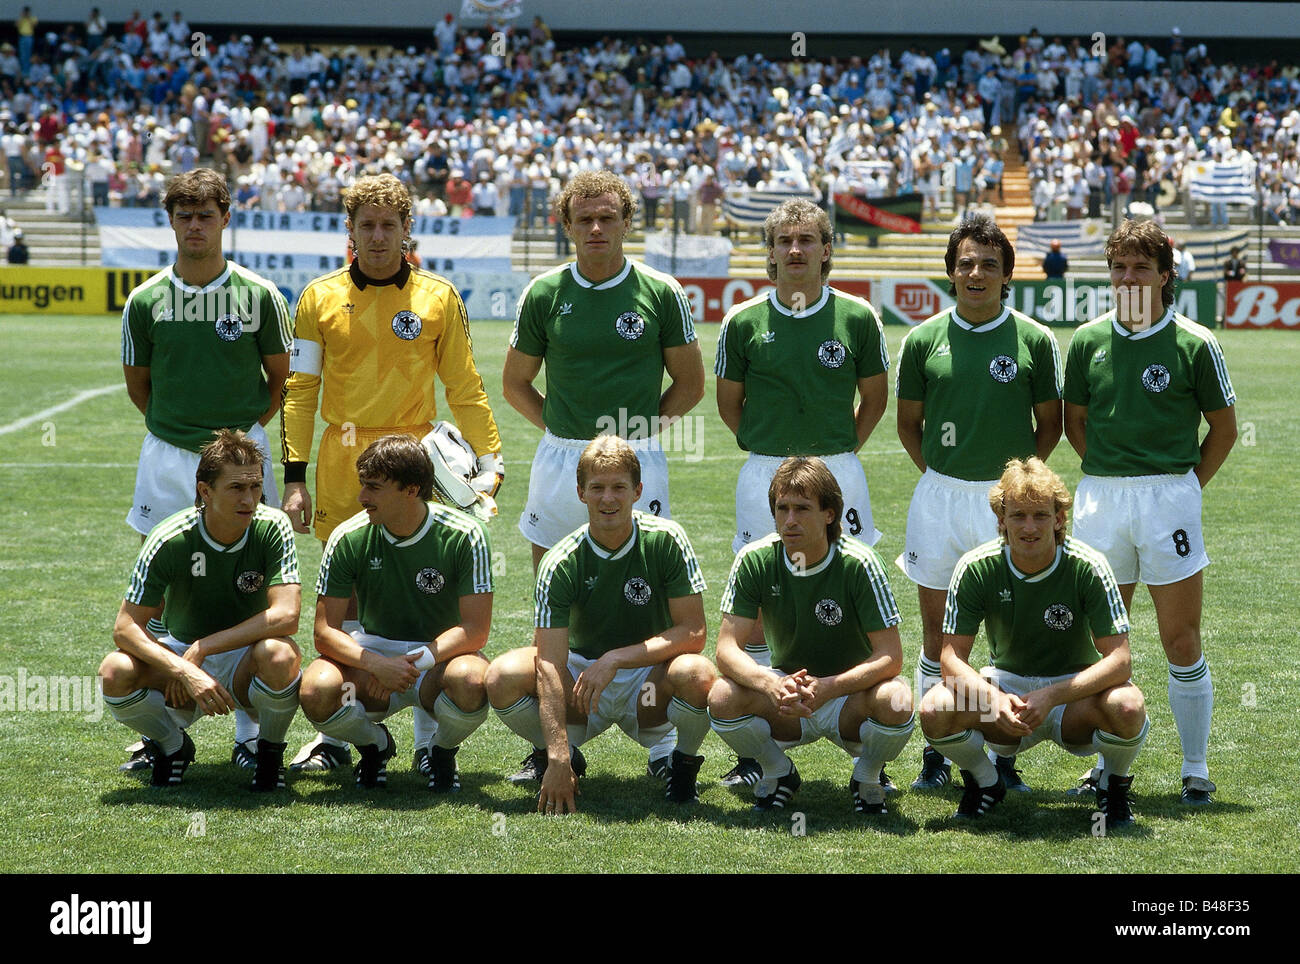 Deporte / Deportes, fútbol, fútbol, Copa del Mundo 1986, última ronda, partido de grupo, Alemania contra Uruguay, (1:1) en Querétaro, México, 4.6.1986, Foto de stock